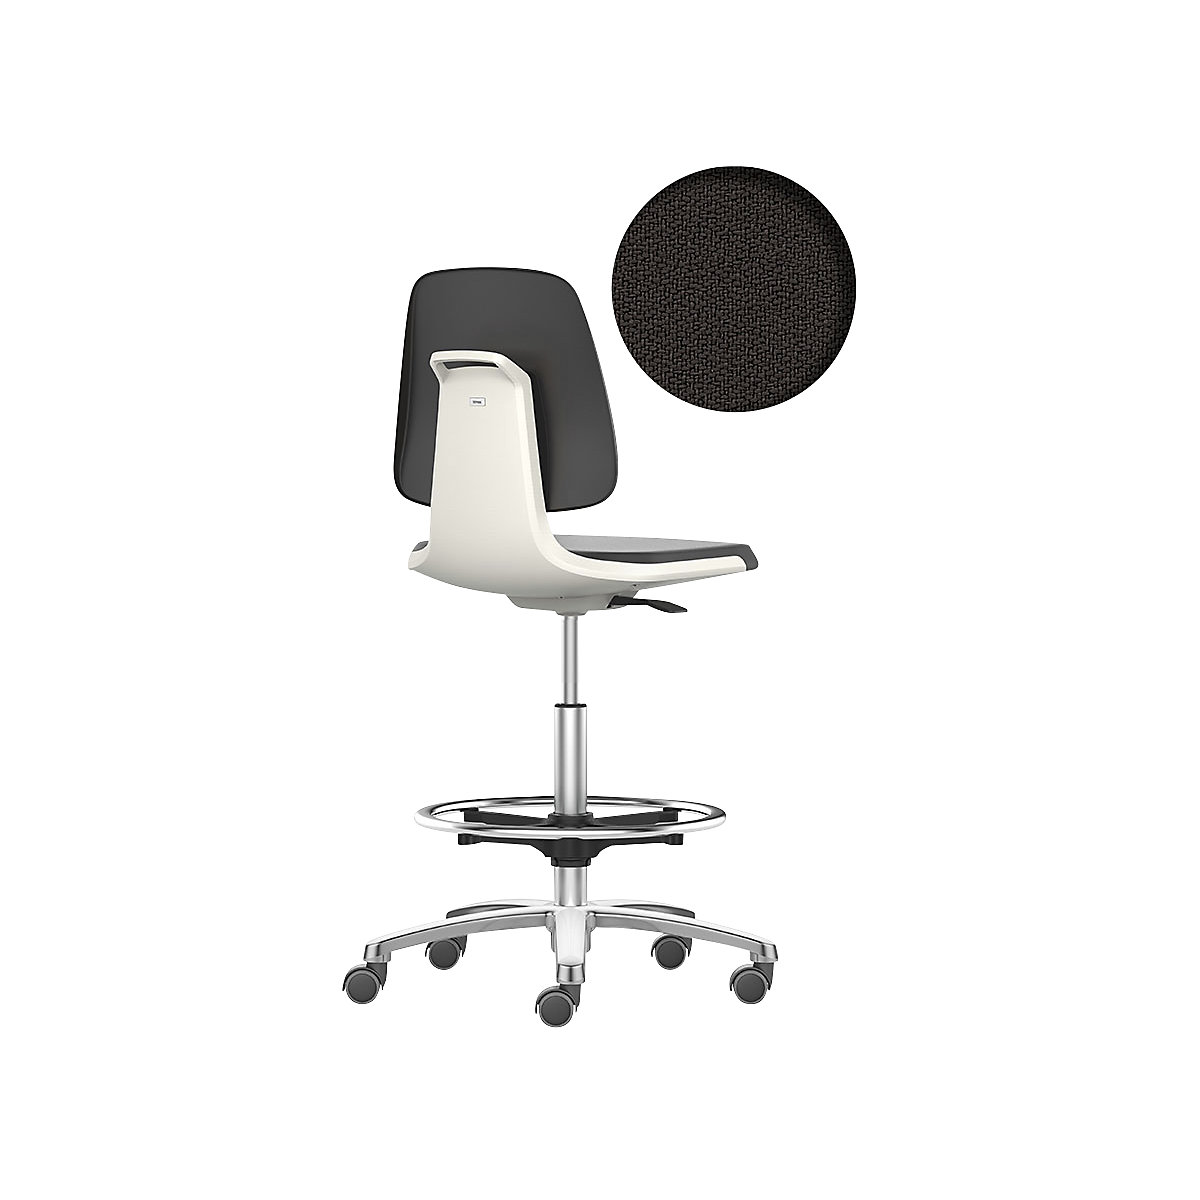 bimos – Siège d'atelier LABSIT, siège haut avec roulettes blocables et repose-pieds circulaire, assise à habillage tissu, blanc